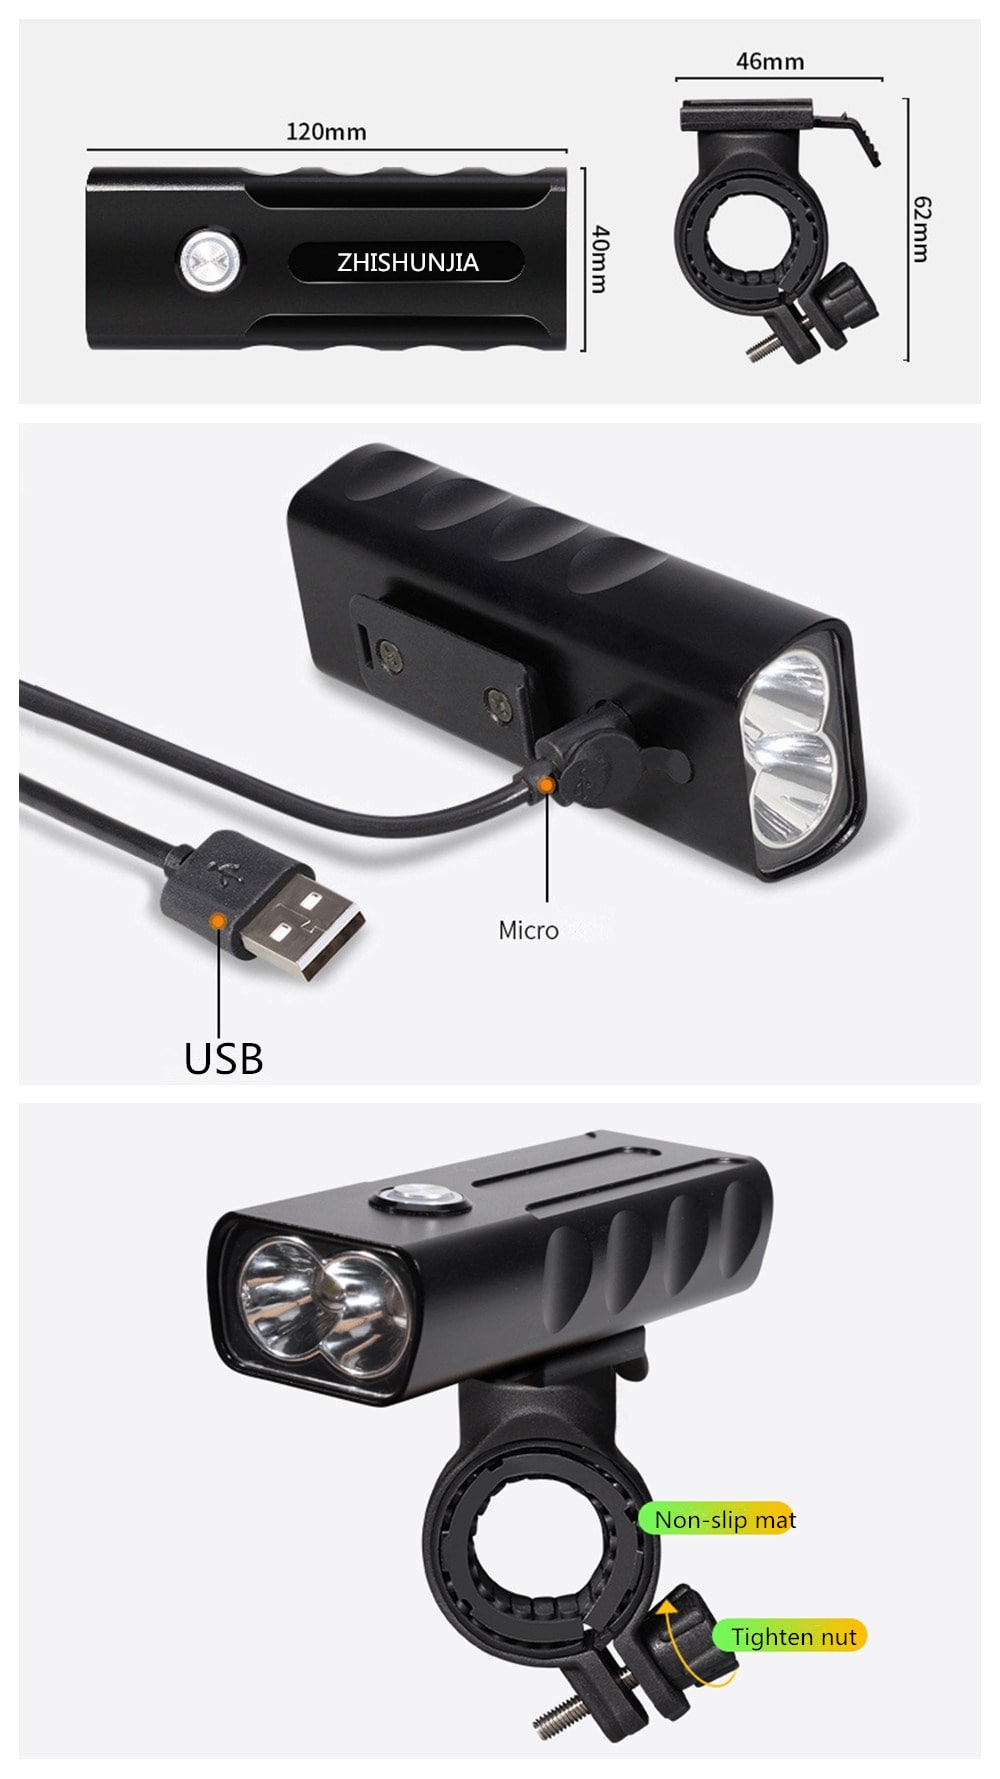 ZHISZHISHUNJIA BX2 1600lm 3-Mode LED Flashlight USB Rechargeable Bicycle Lamp- Black